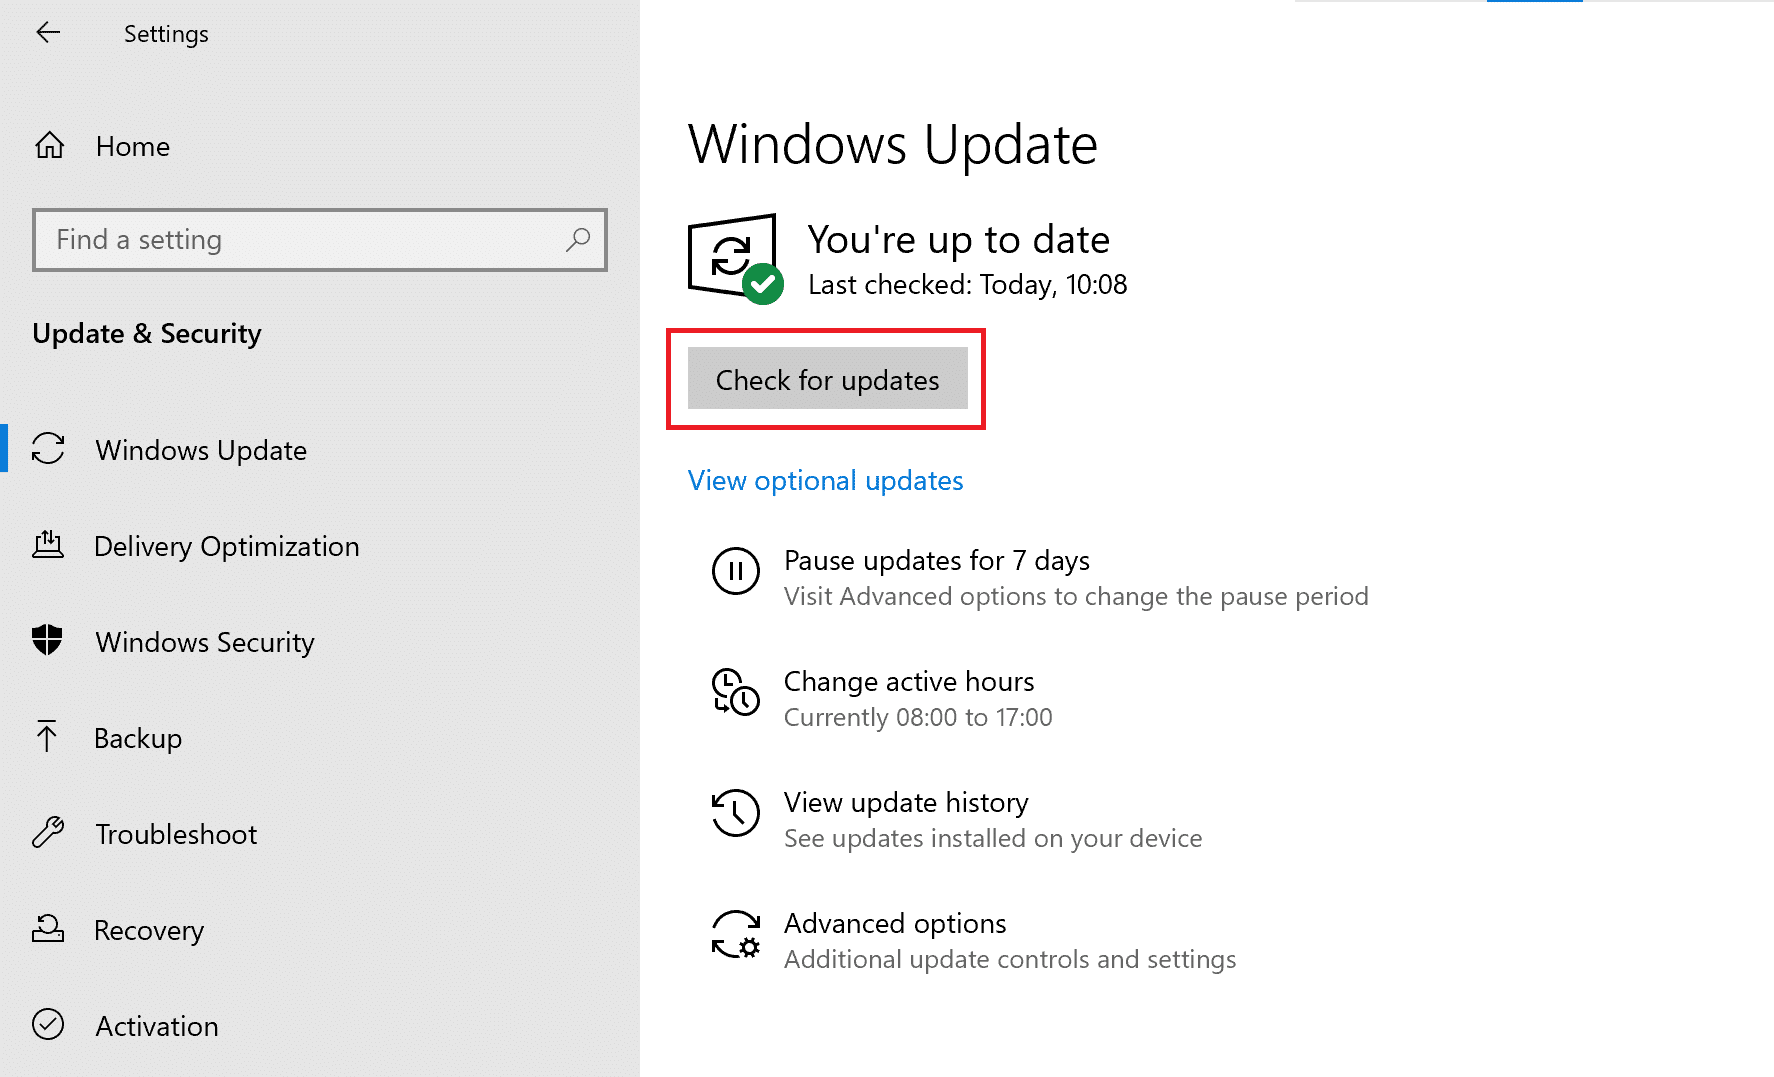 Controlla gli aggiornamenti di Windows. Correggi il prompt dei comandi che appare e poi scompare su Windows 10